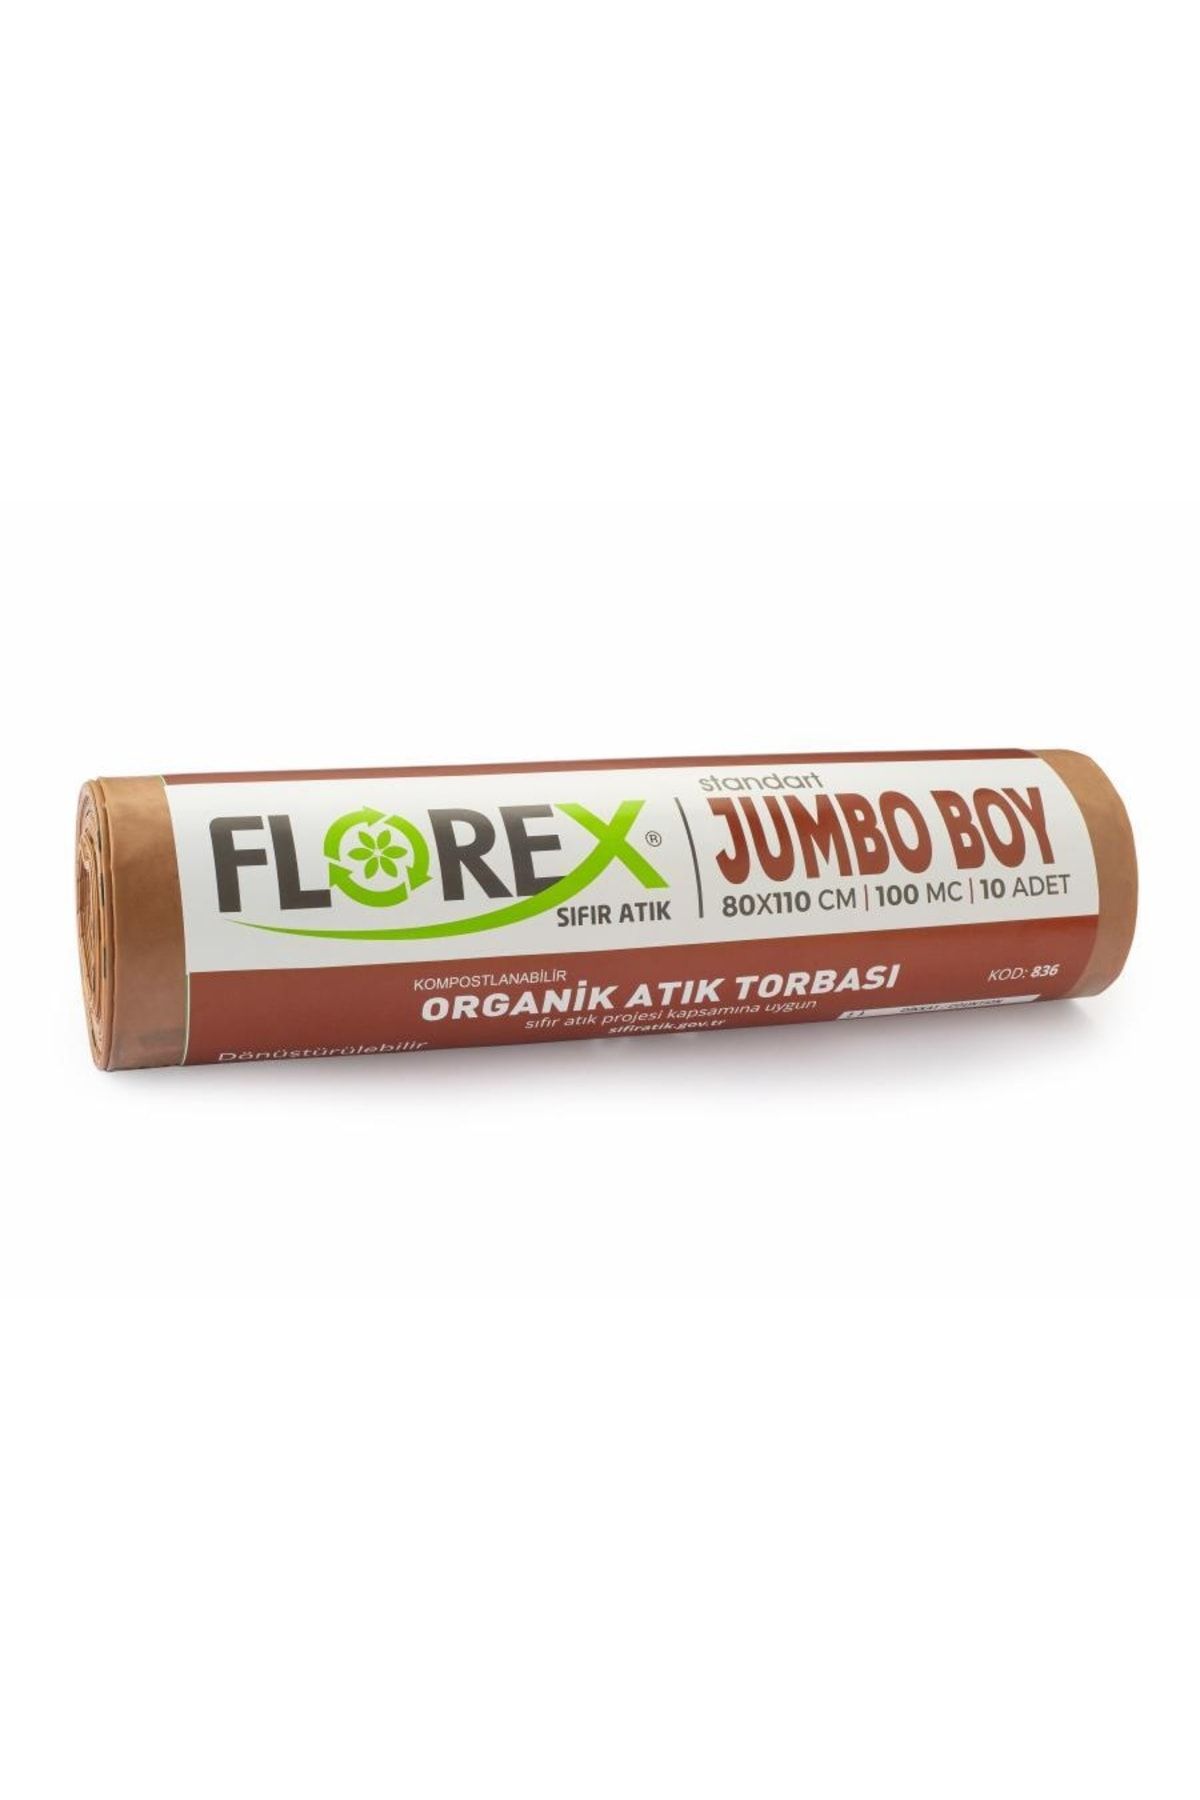 coverest Florex 800 Gr Organik Atık Torbası Jumbo Boy (80x110) Kahverengi Çöp Poşeti 10 Rulo (10*10=100 Adt)